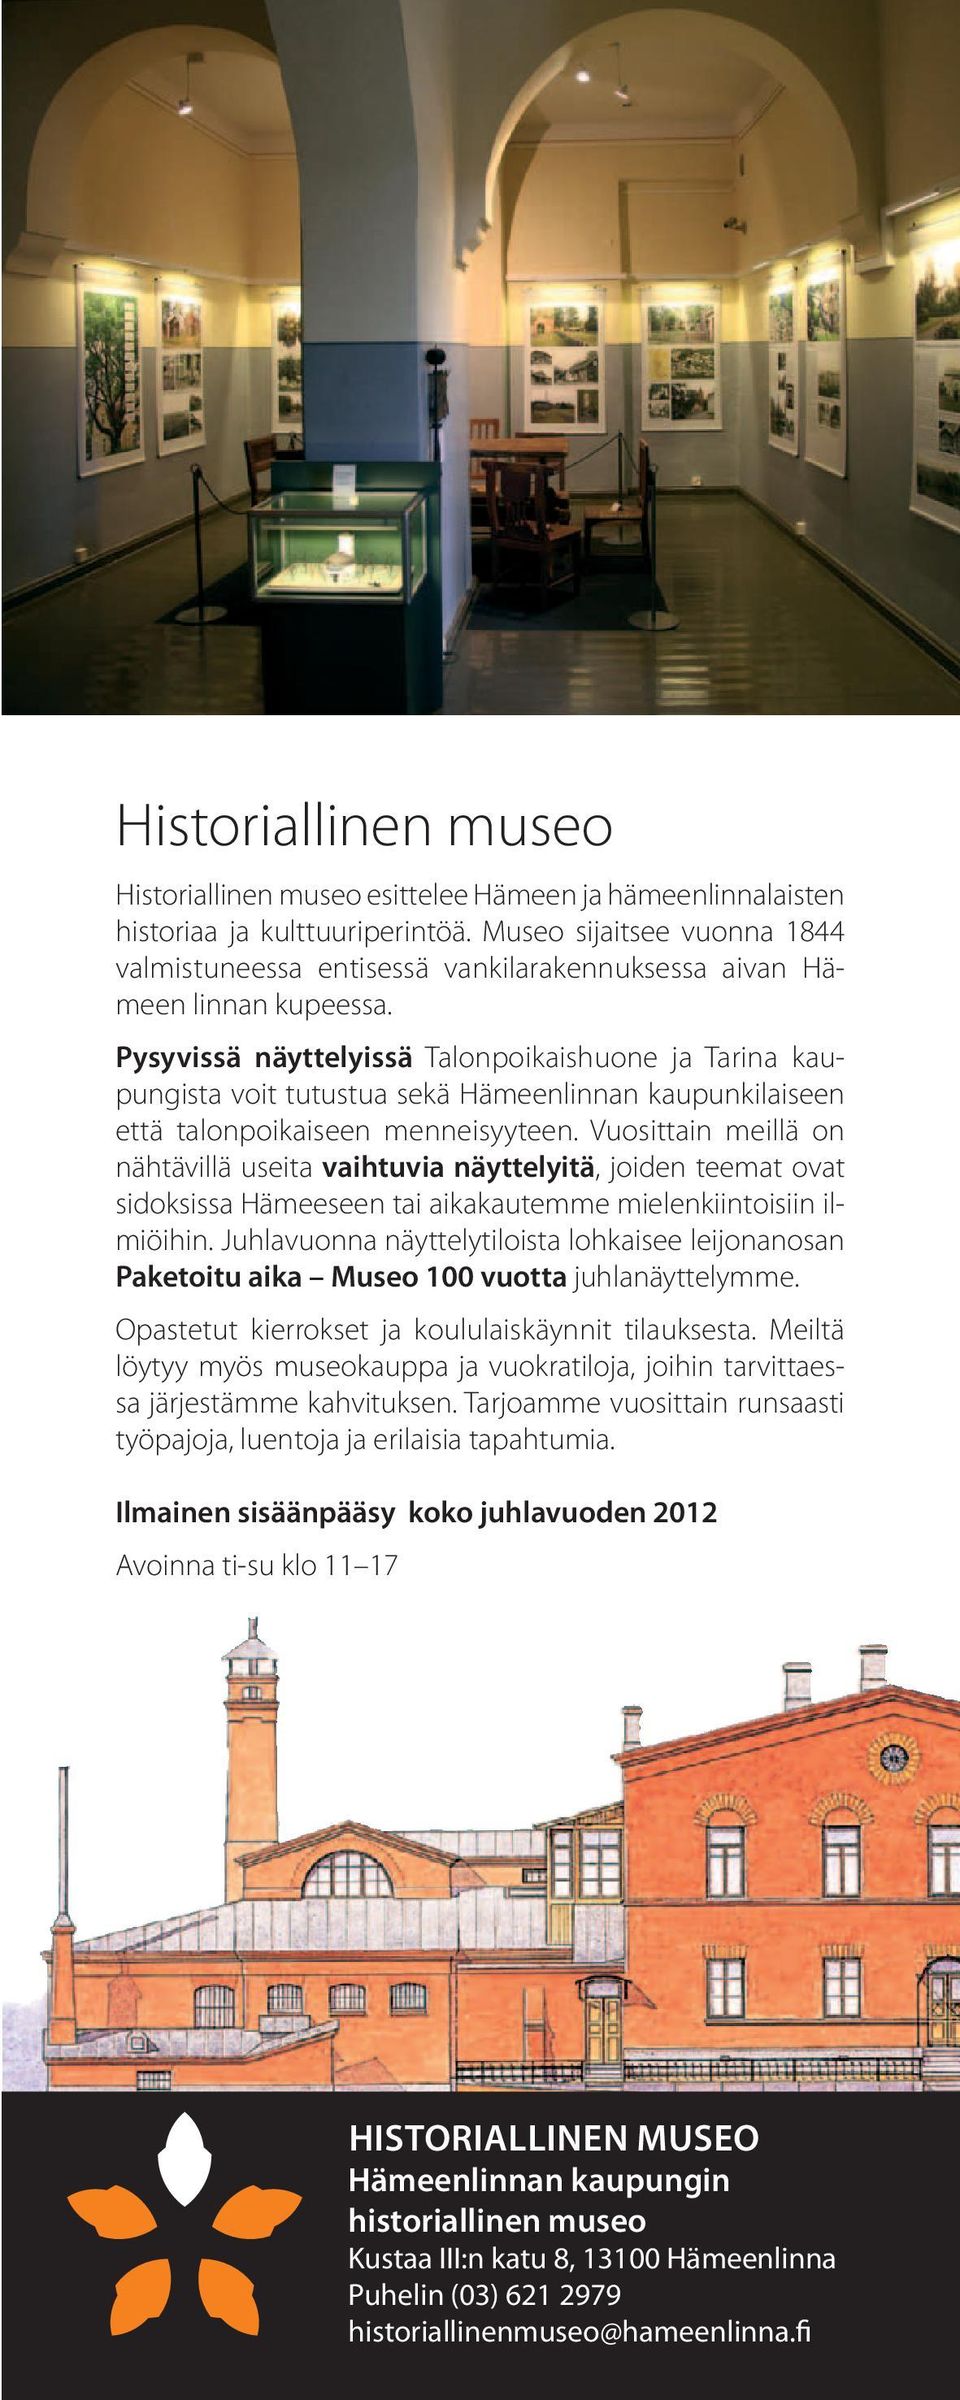 Pysyvissä näyttelyissä Talonpoikaishuone ja Tarina kaupungista voit tutustua sekä Hämeenlinnan kaupunkilaiseen että talonpoikaiseen menneisyyteen.